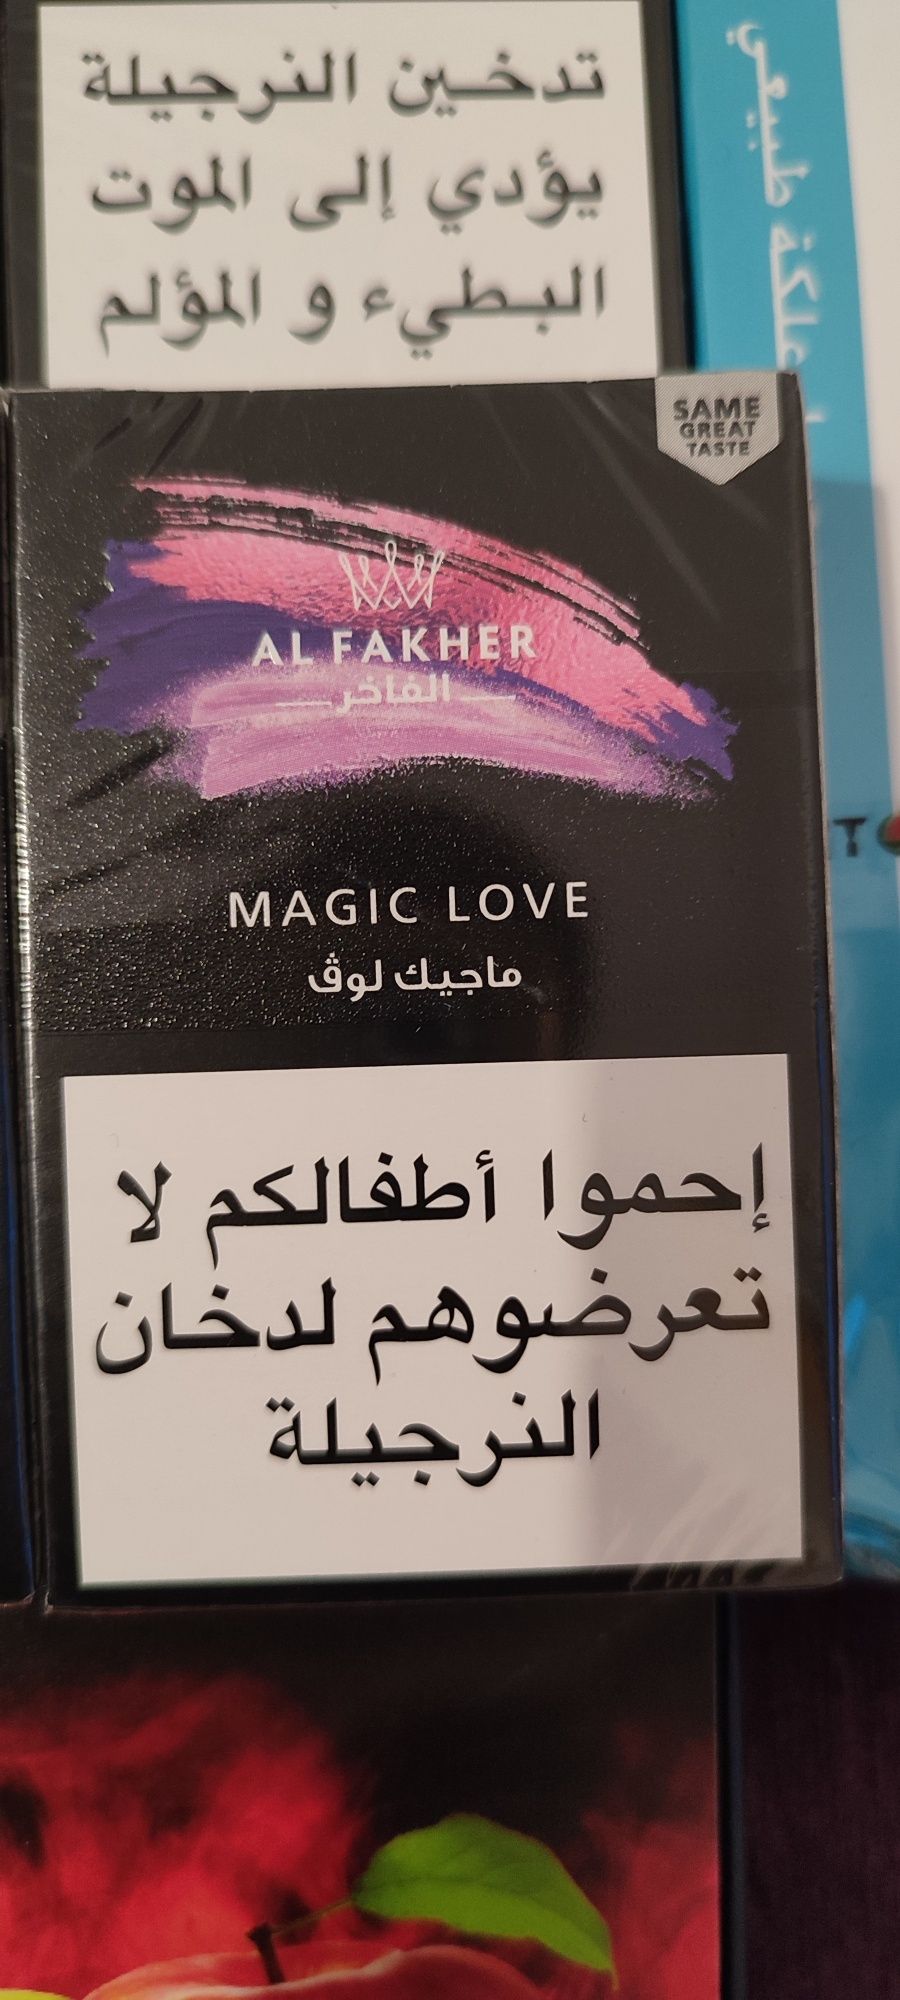 Vând aroma de narghilea 100% originală de la alfaker adusa din Dubai